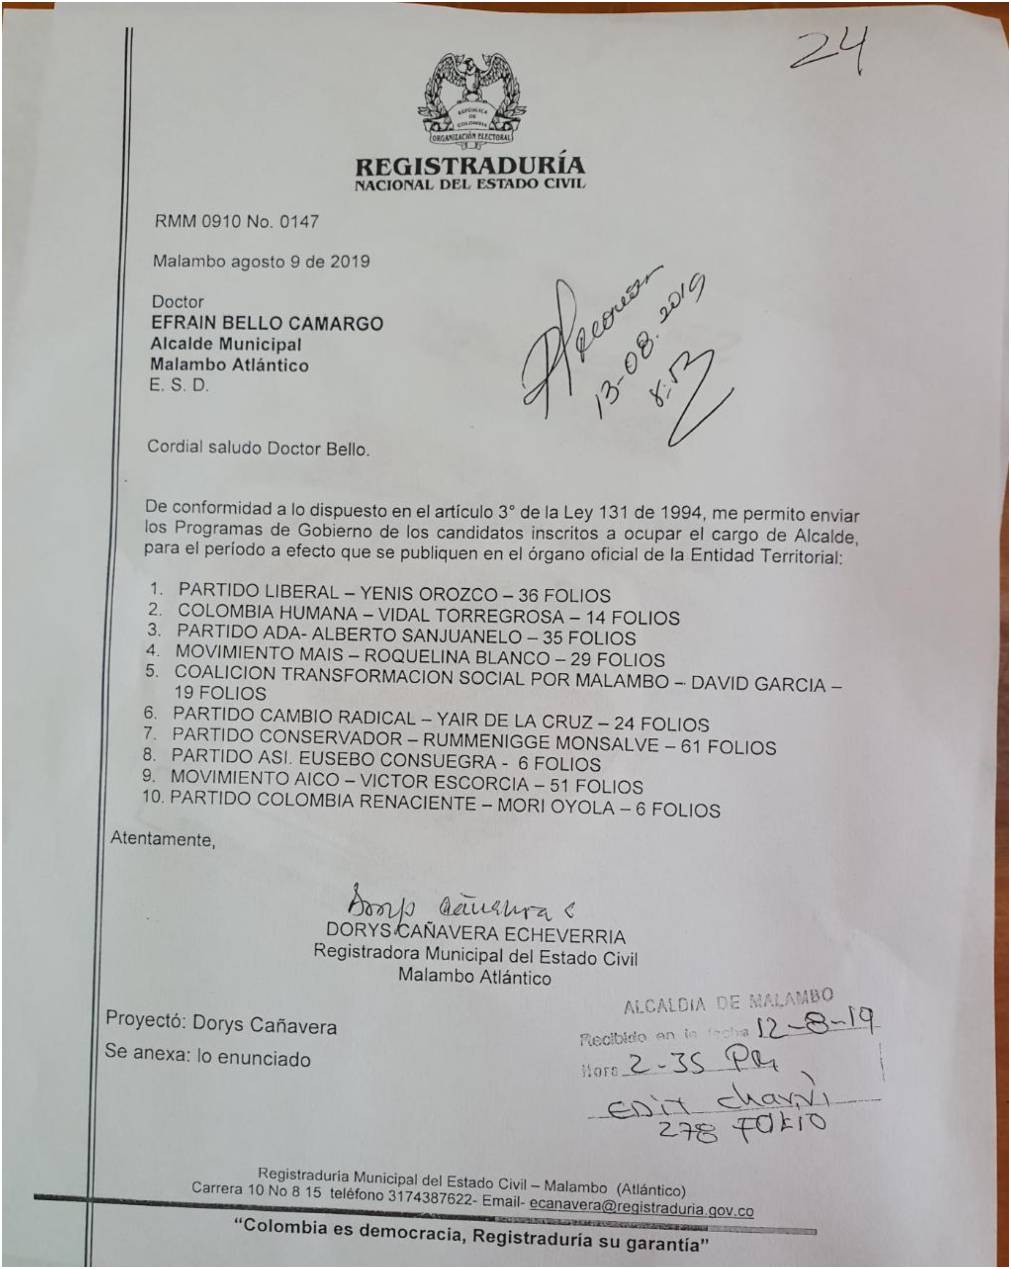  Oficio de la Registraduría remitiéndo los planes de gobierno de los diferentes candidatos para que los publicaran en la web de la Alcaldía.